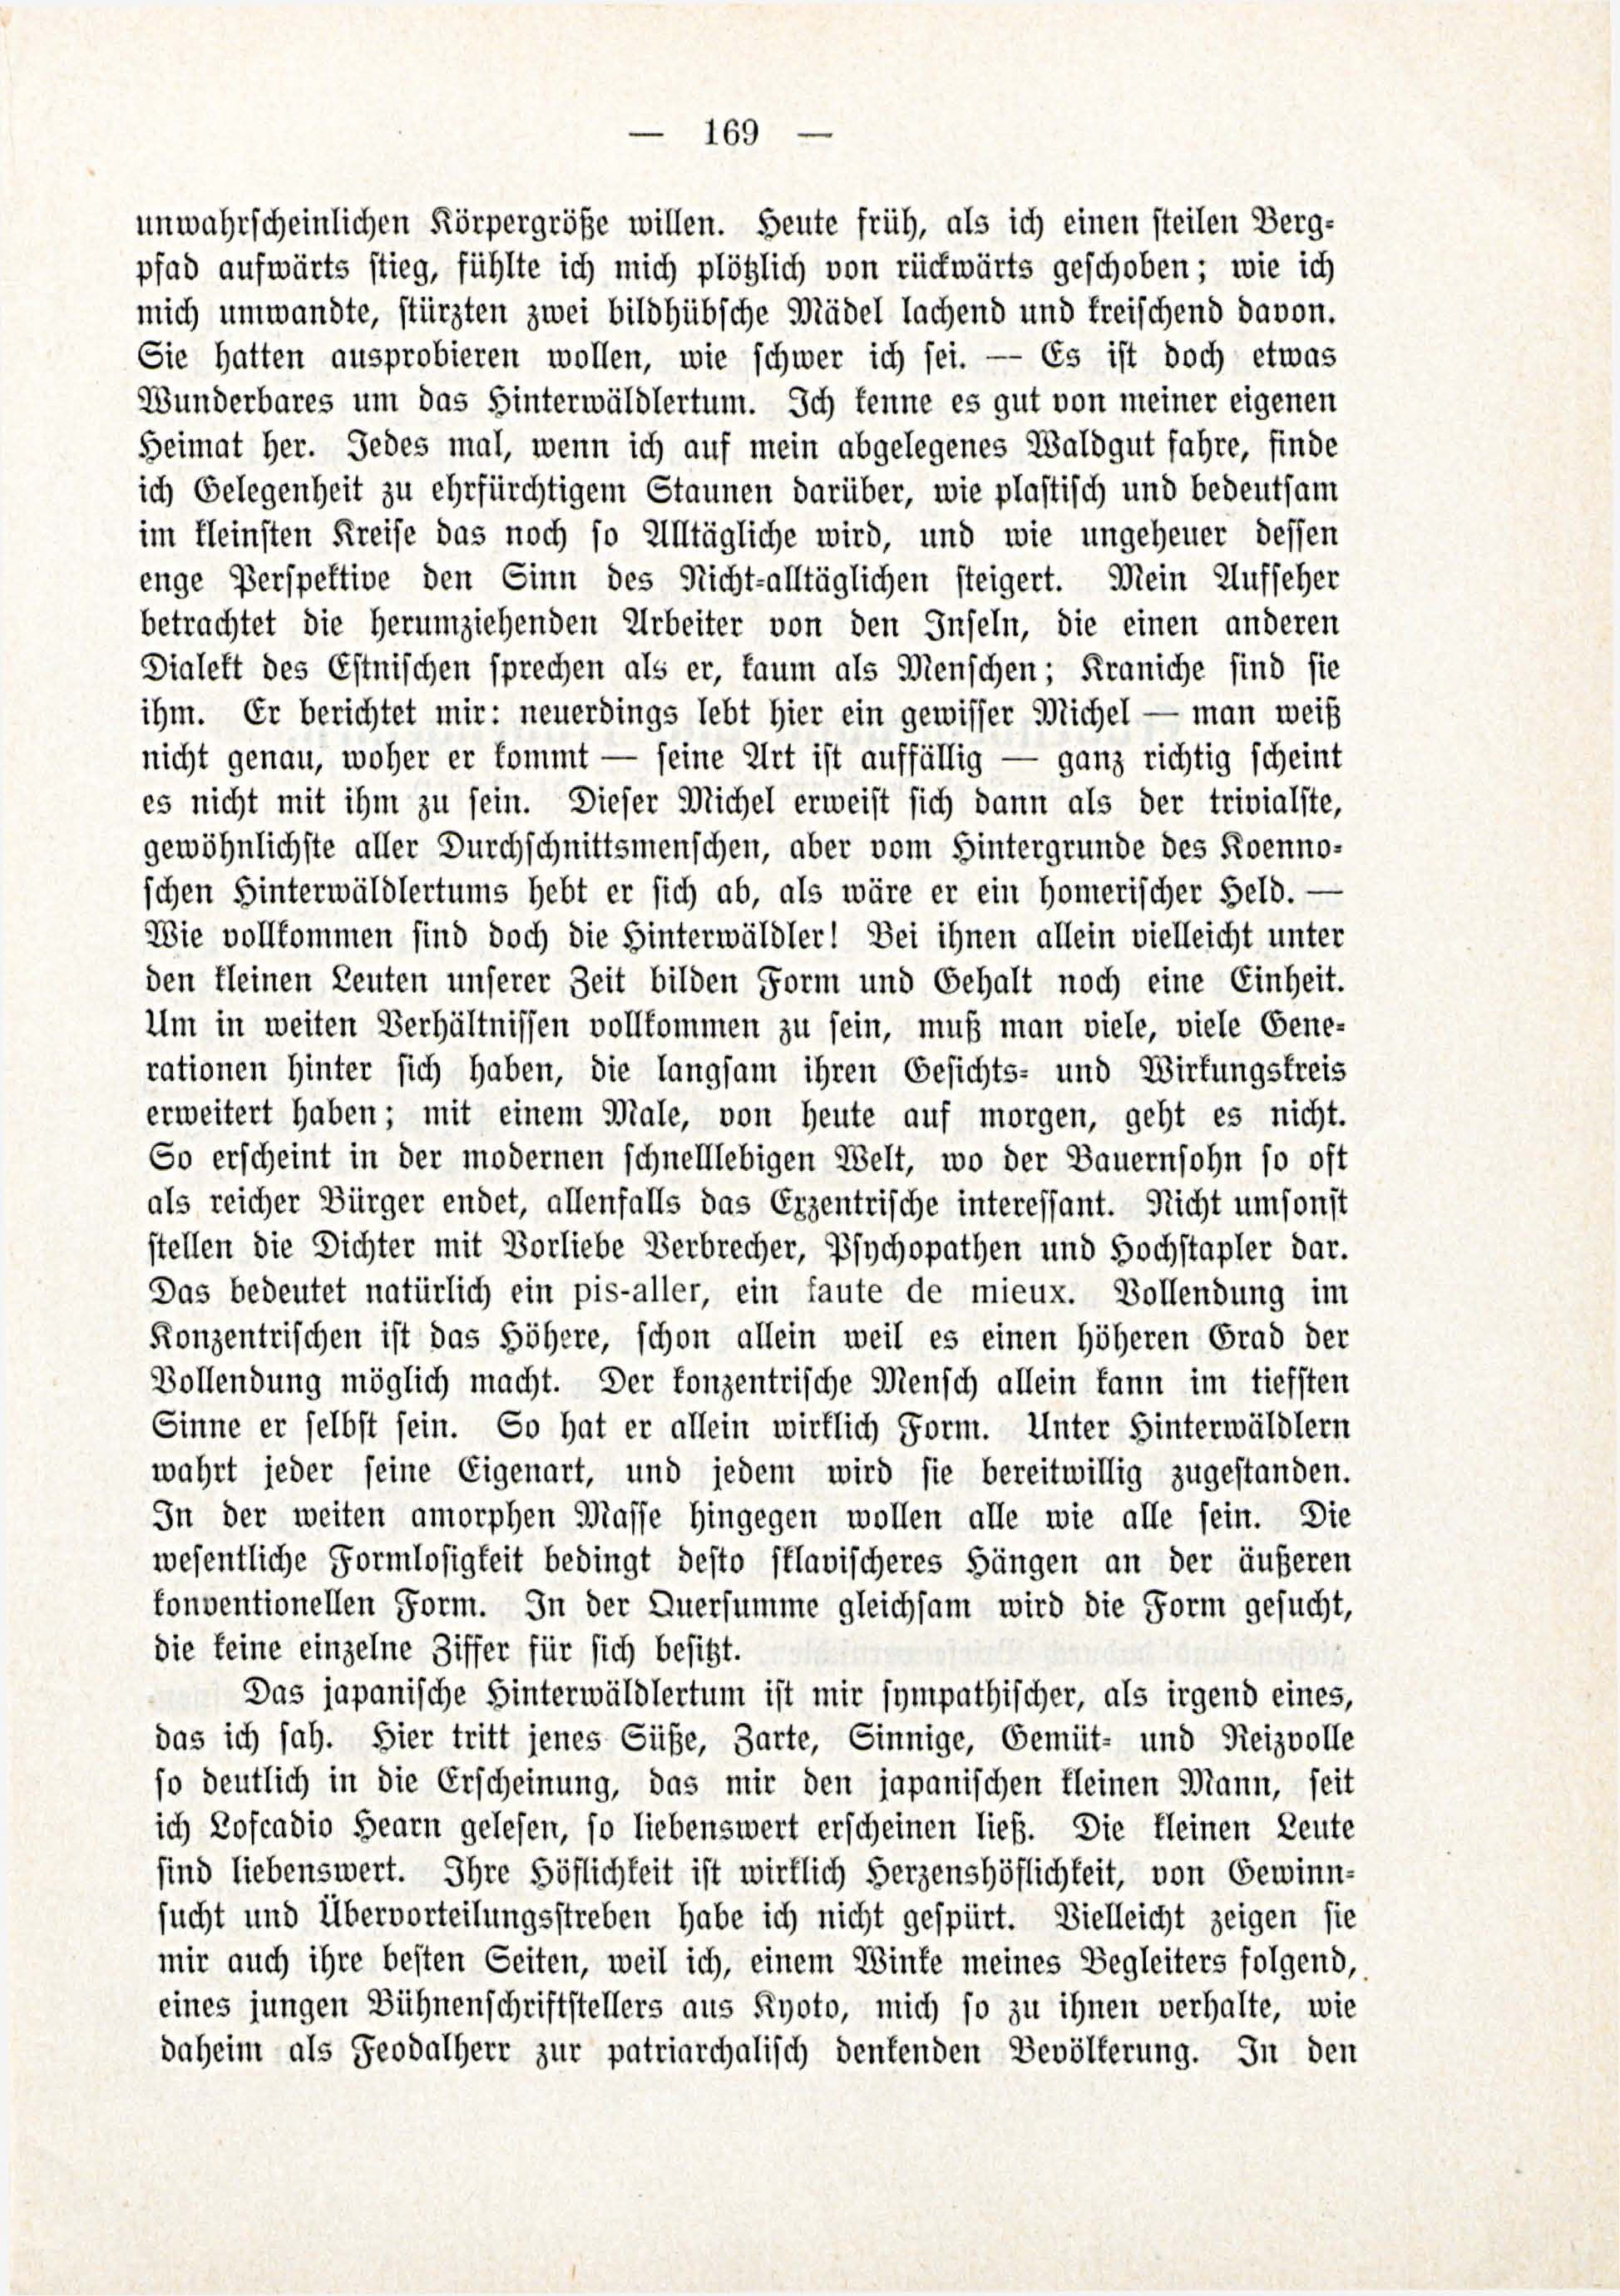 Deutsche Monatsschrift für Russland [3/03] (1914) | 15. (169) Haupttext